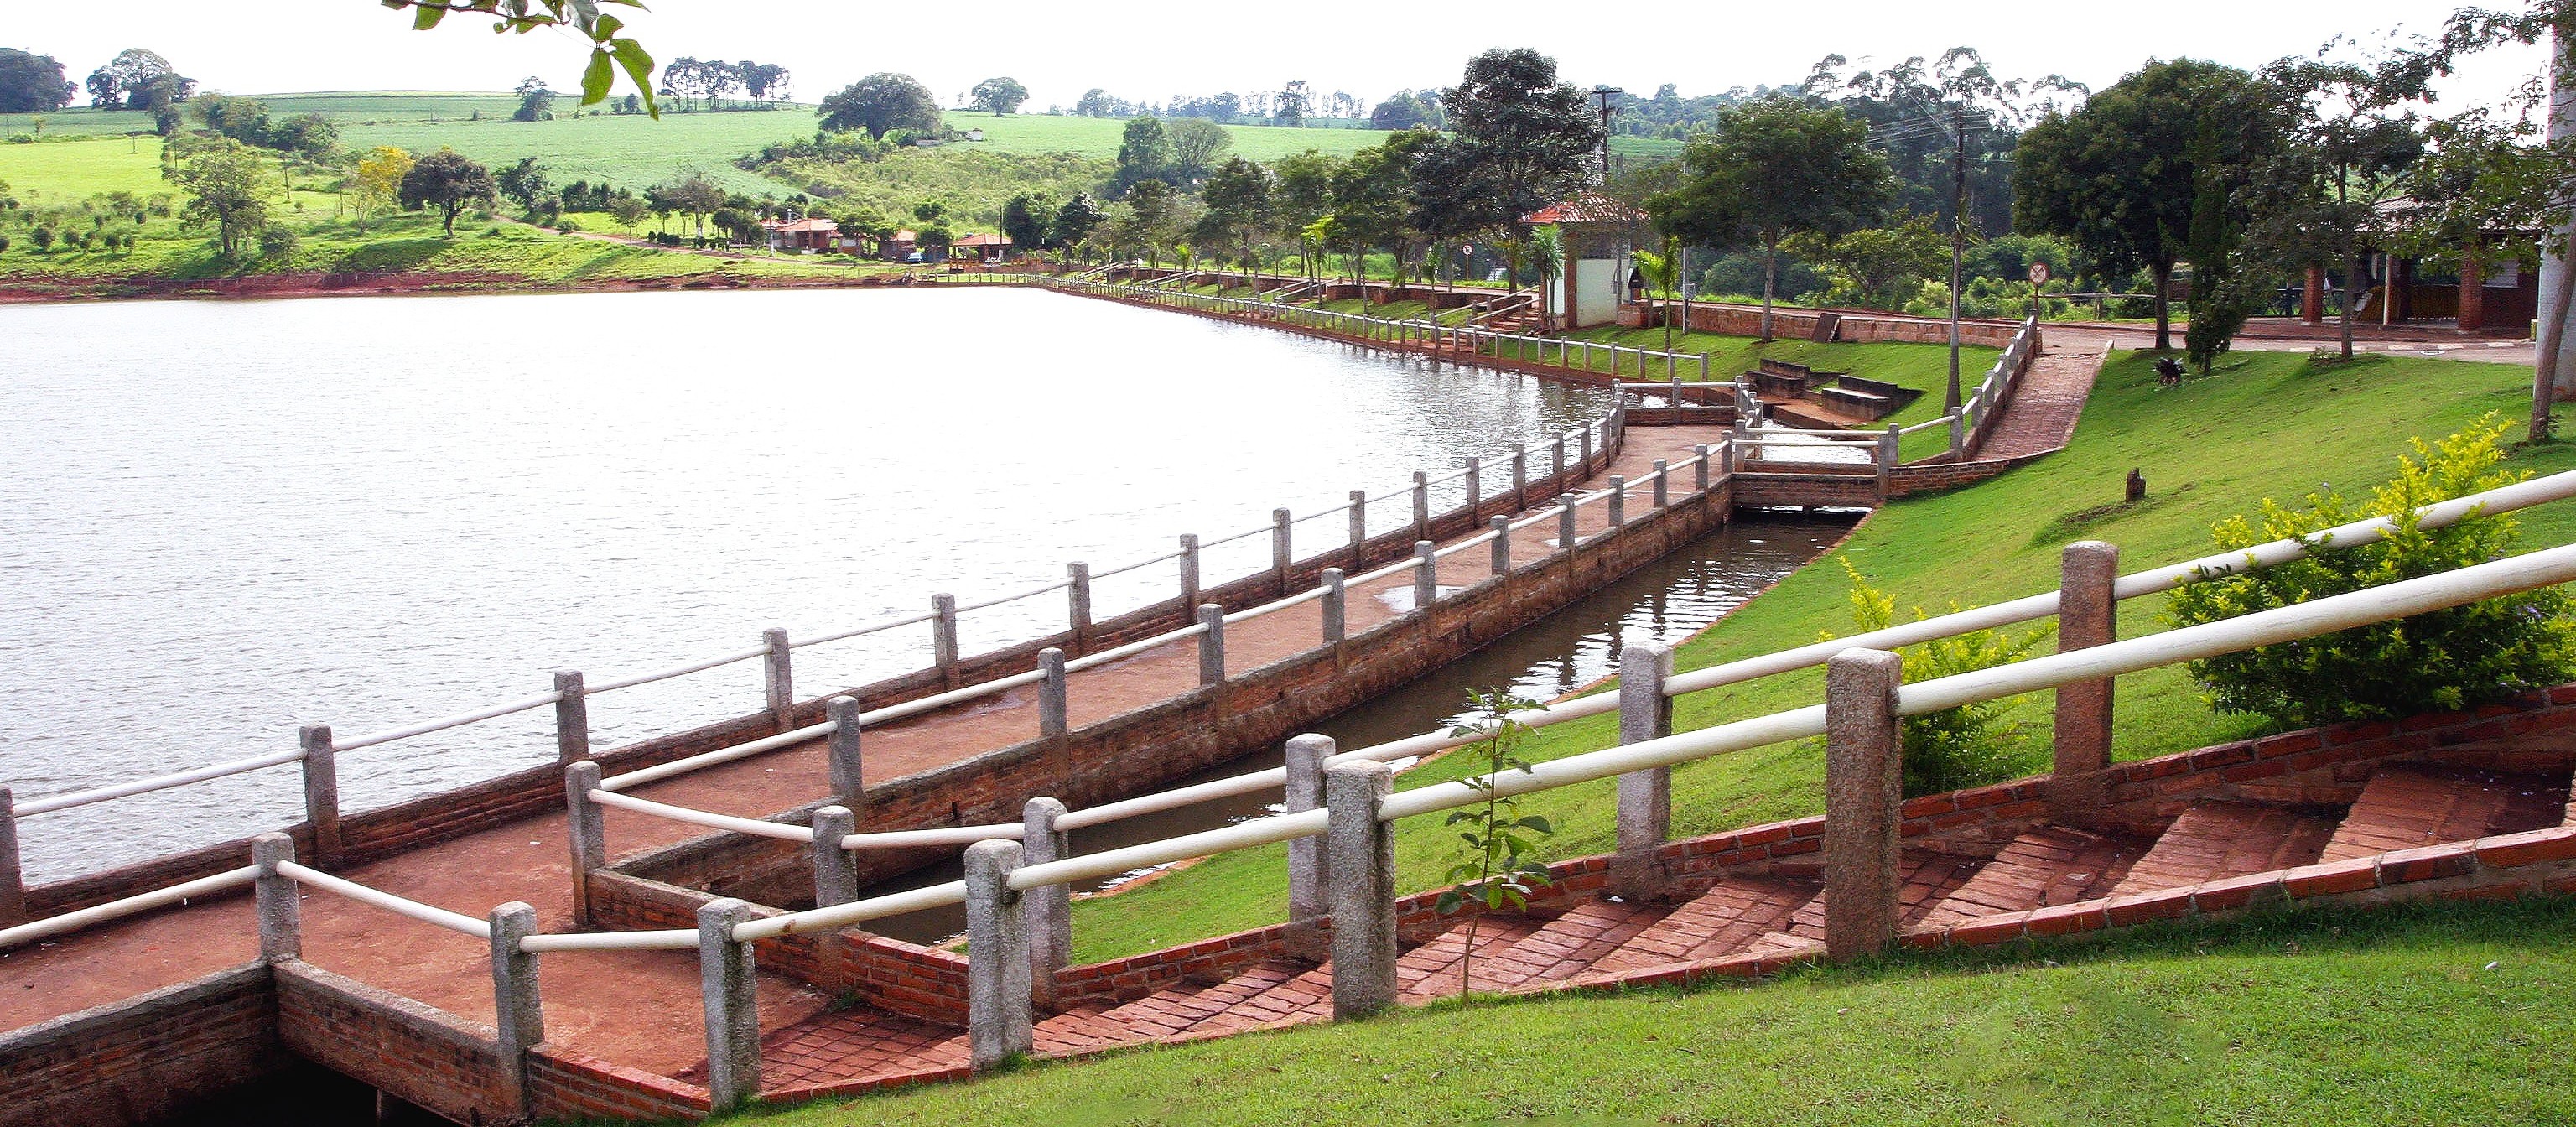 Segurança será reforçada após morte de adolescentes no lago do parque em Apucarana